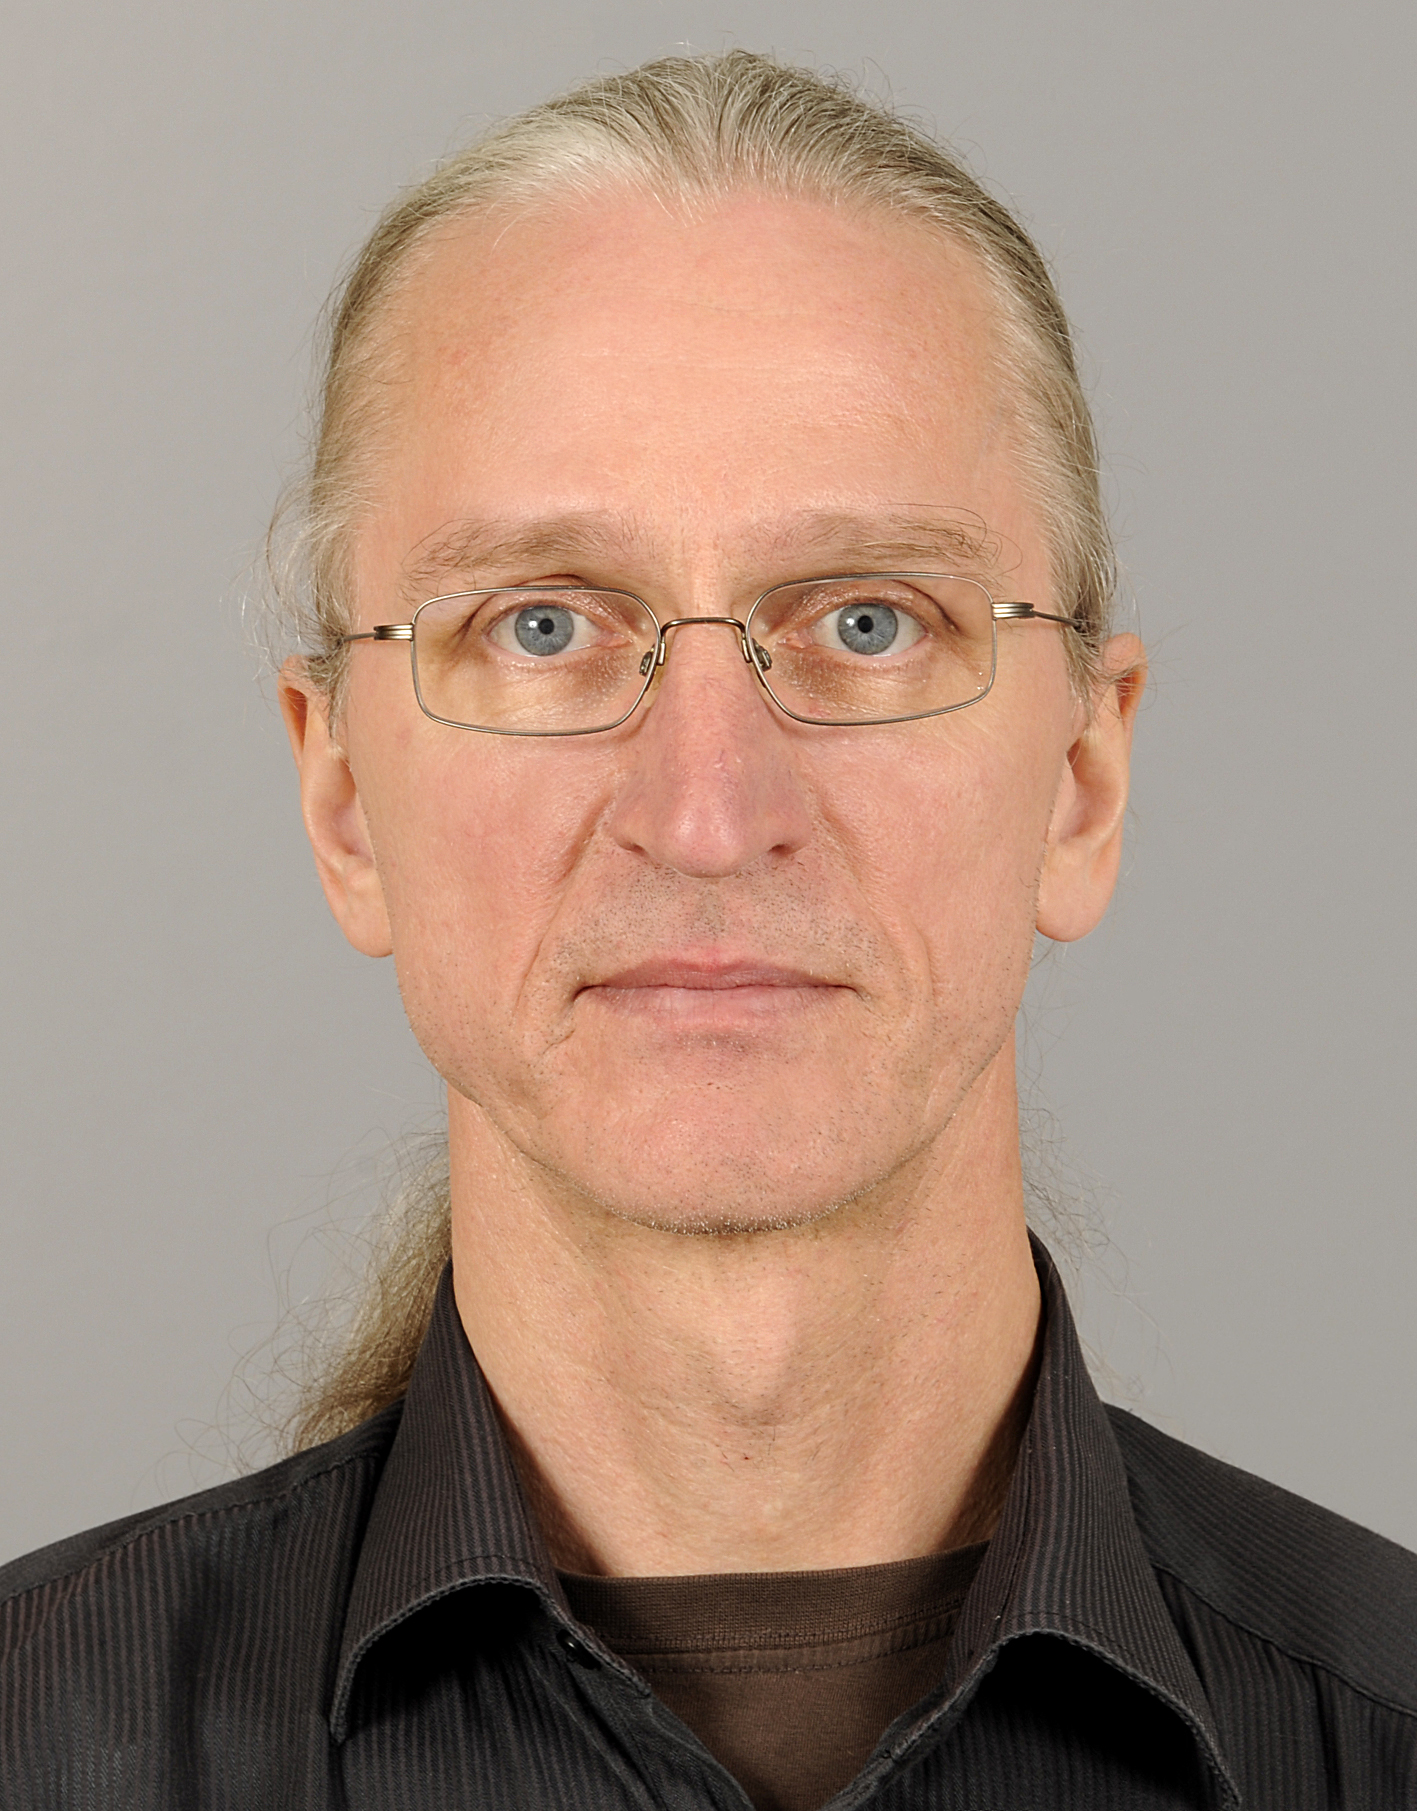 Bernd bodermann